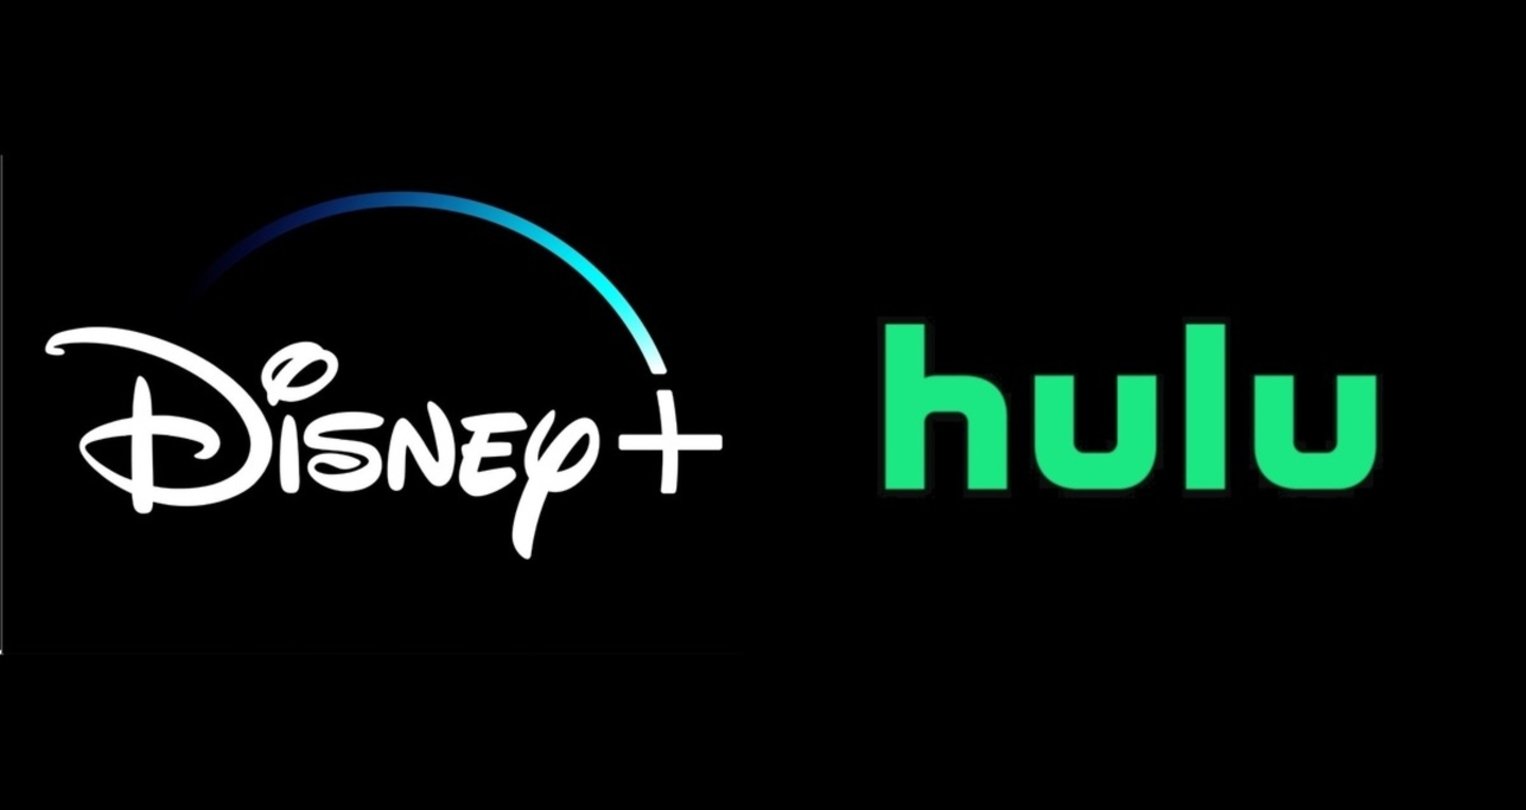 Logos de Disney+ y Hulu